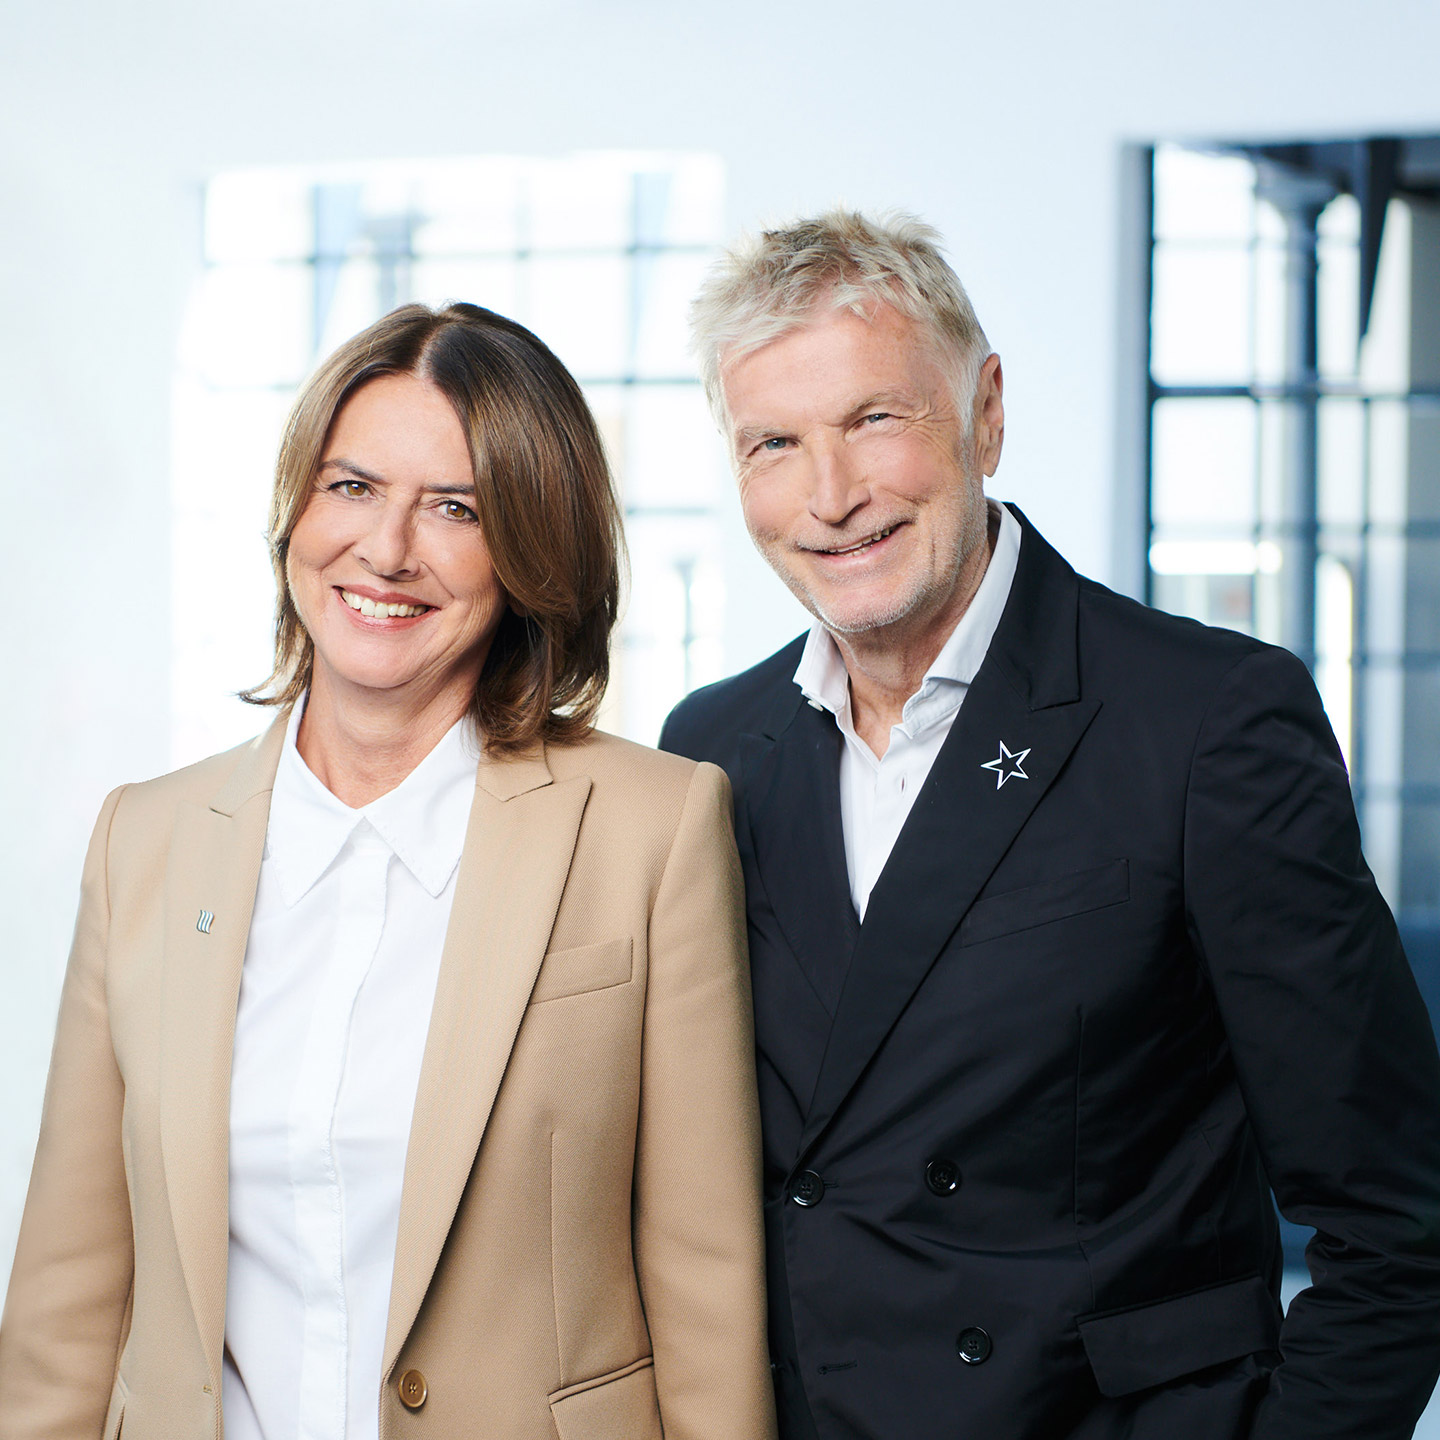 The managing directors Erika and Hans Felder smile